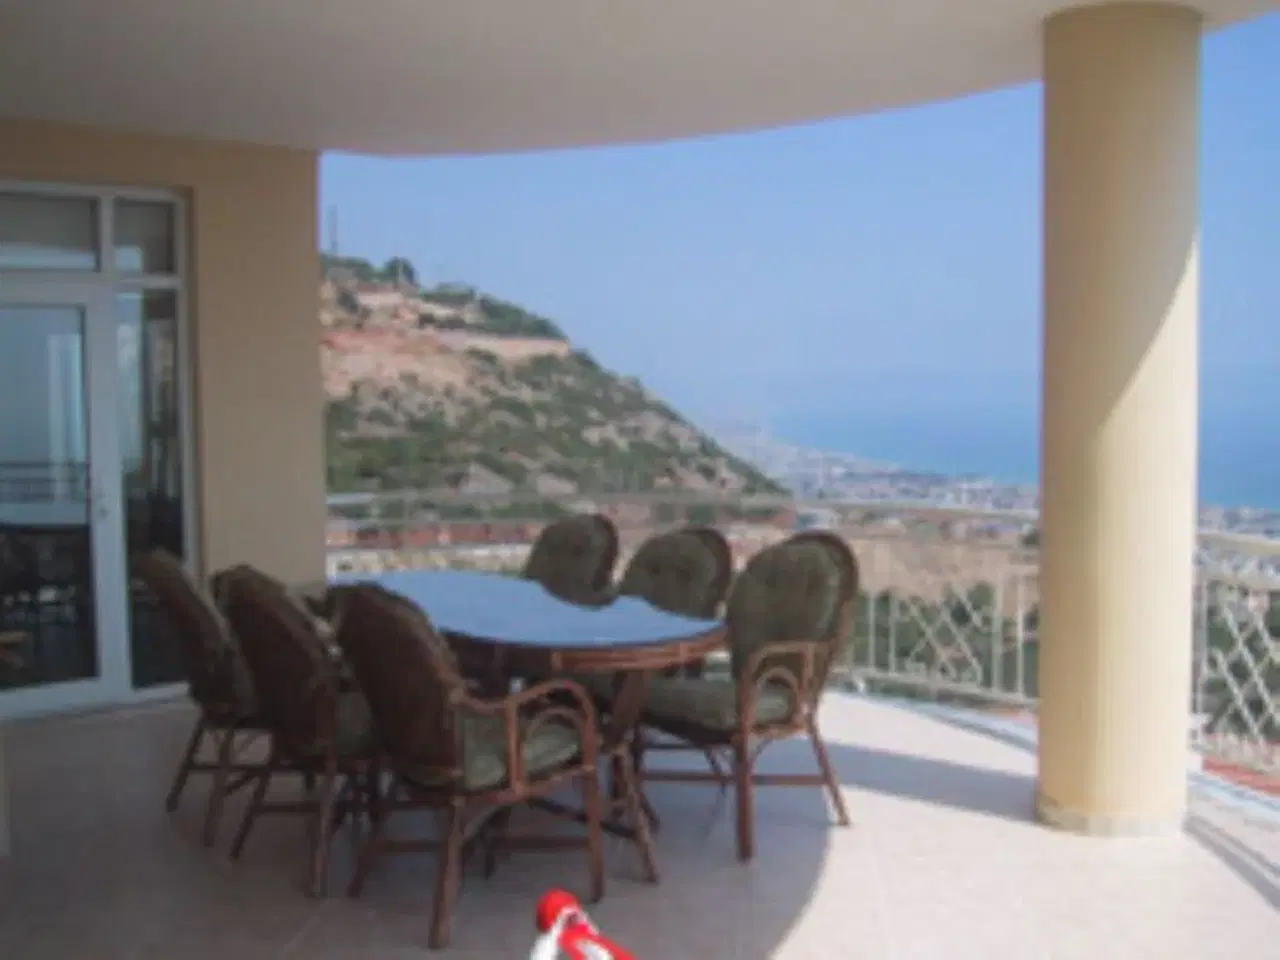 Billede 4 - Luksuslejlighed i Tyrkiet med havudsigt, 180 m2 i Alanya med 600 m2 fælles pool, 4 soveværelser, 2 b